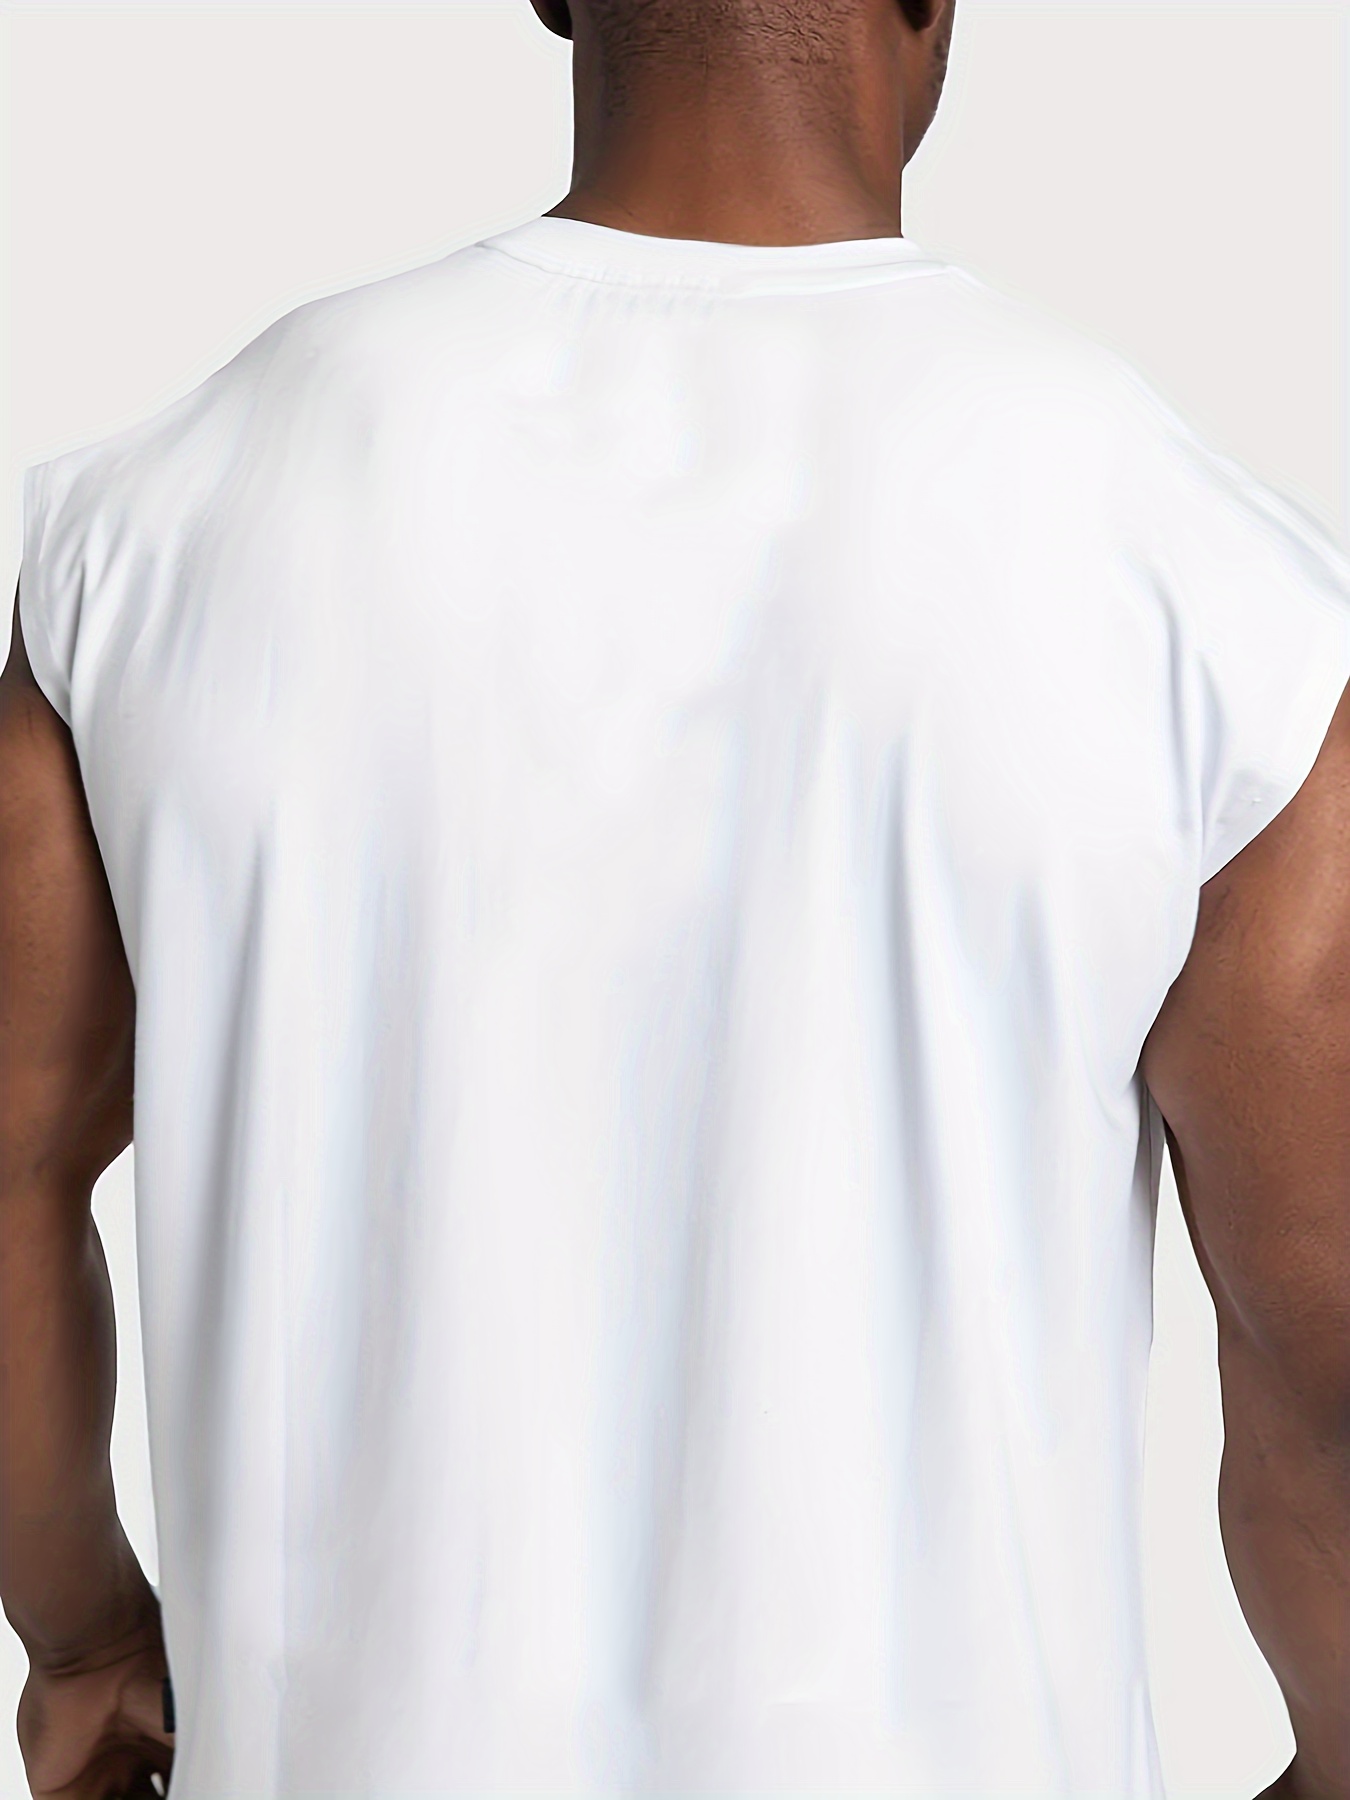 Men's Sleeveless Henley Tank Tops Summer Casual Cotton Regular Fit Button  Up T-Shirt Fitness Workout Yoga Beach Muscle Vest